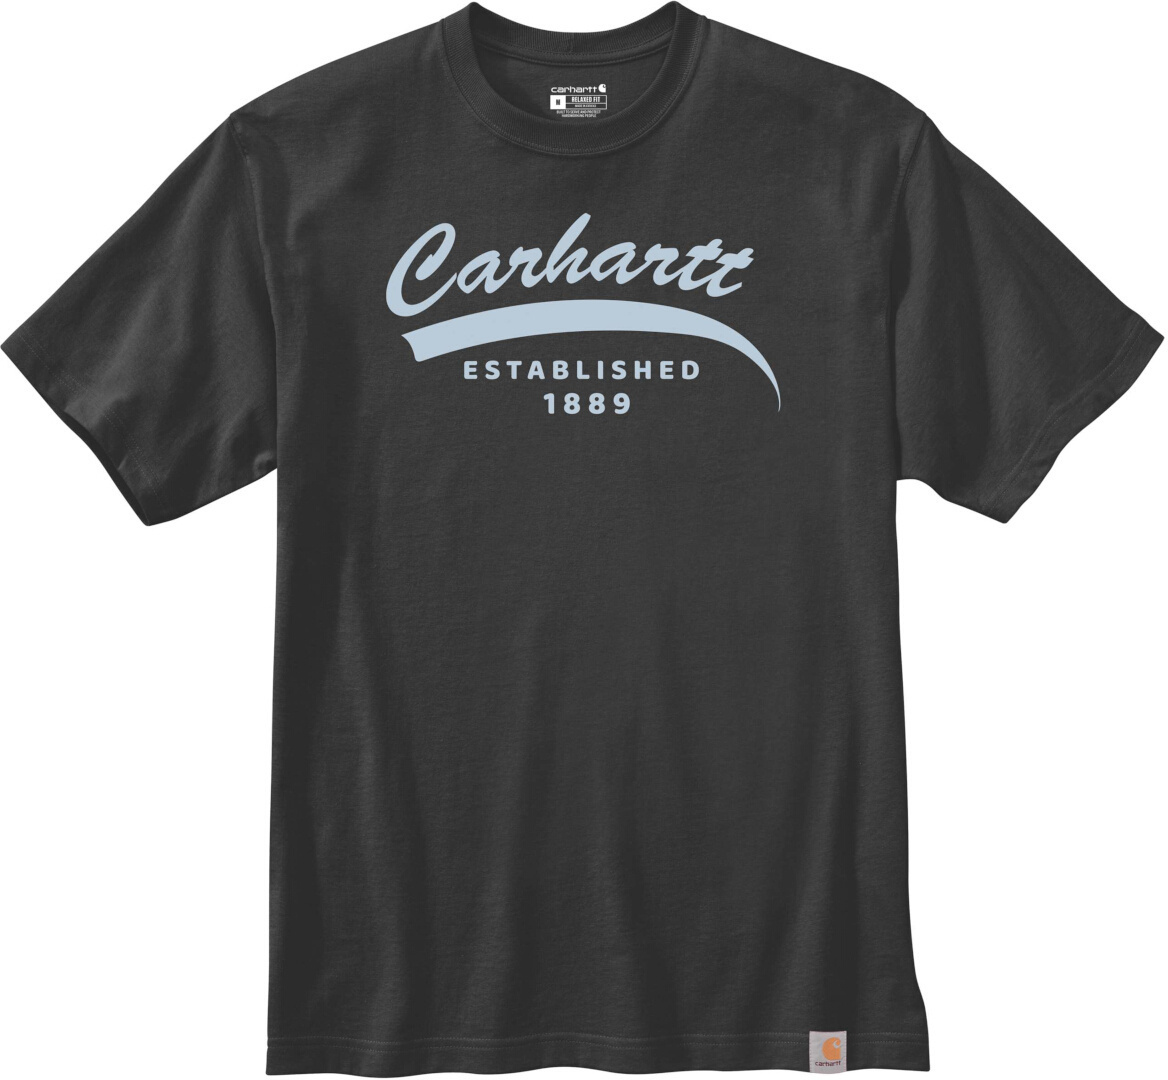 Carhartt Relaxed Fit Heavyweight Graphic T-Shirt, schwarz, Größe M, schwarz, Größe M